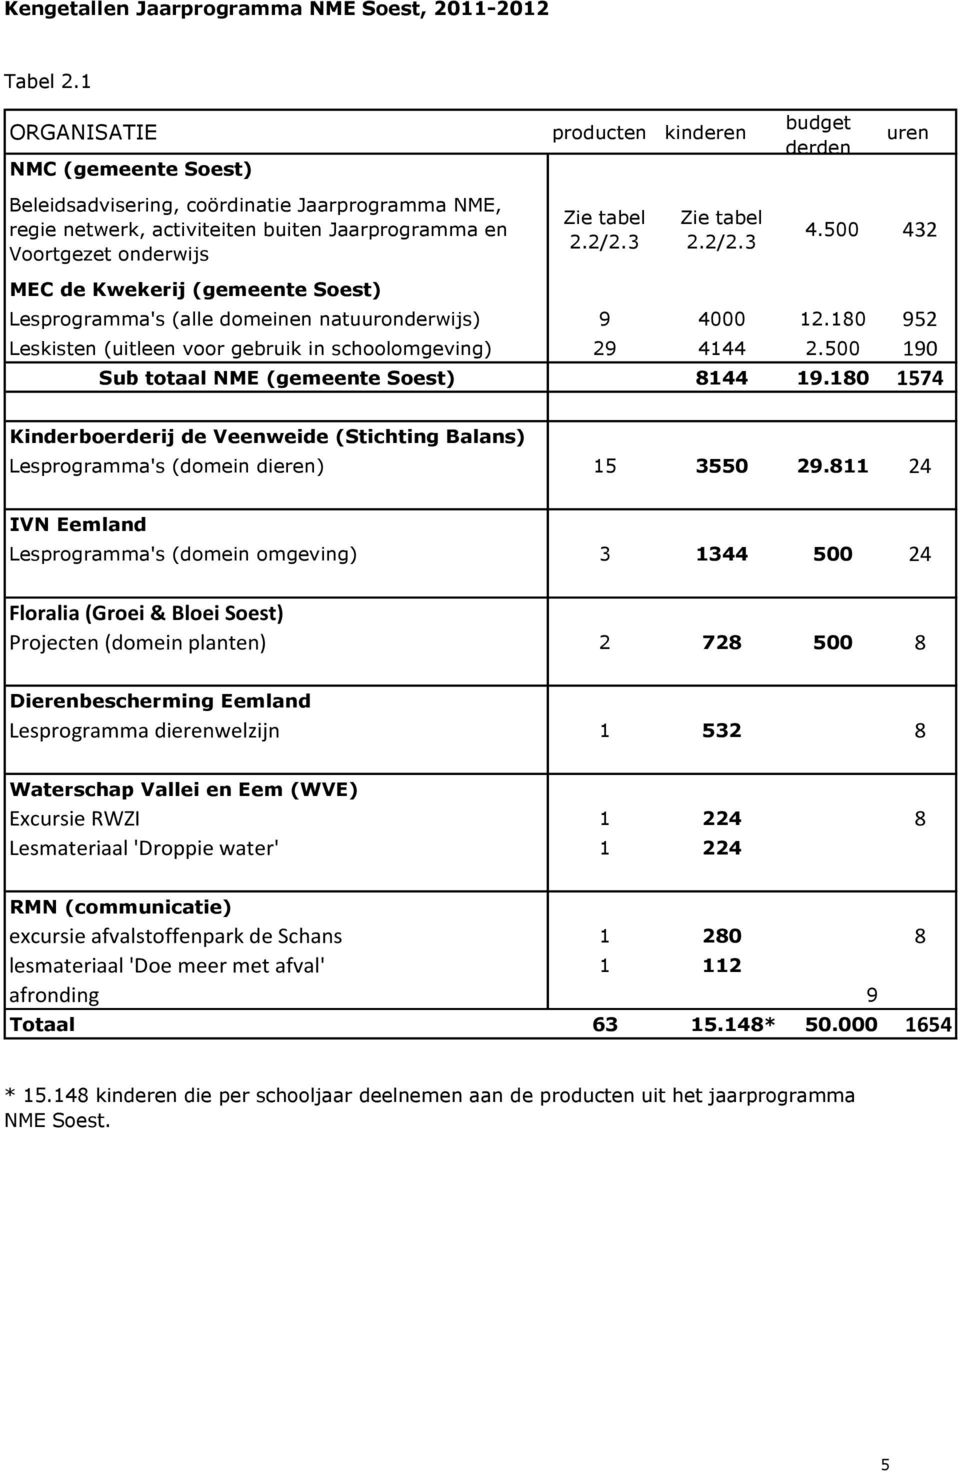 tabel 2.2/2.3 Zie tabel 2.2/2.3 4.500 432 MEC de Kwekerij (gemeente Soest) Lesprogramma's (alle domeinen natuuronderwijs) 9 4000 12.